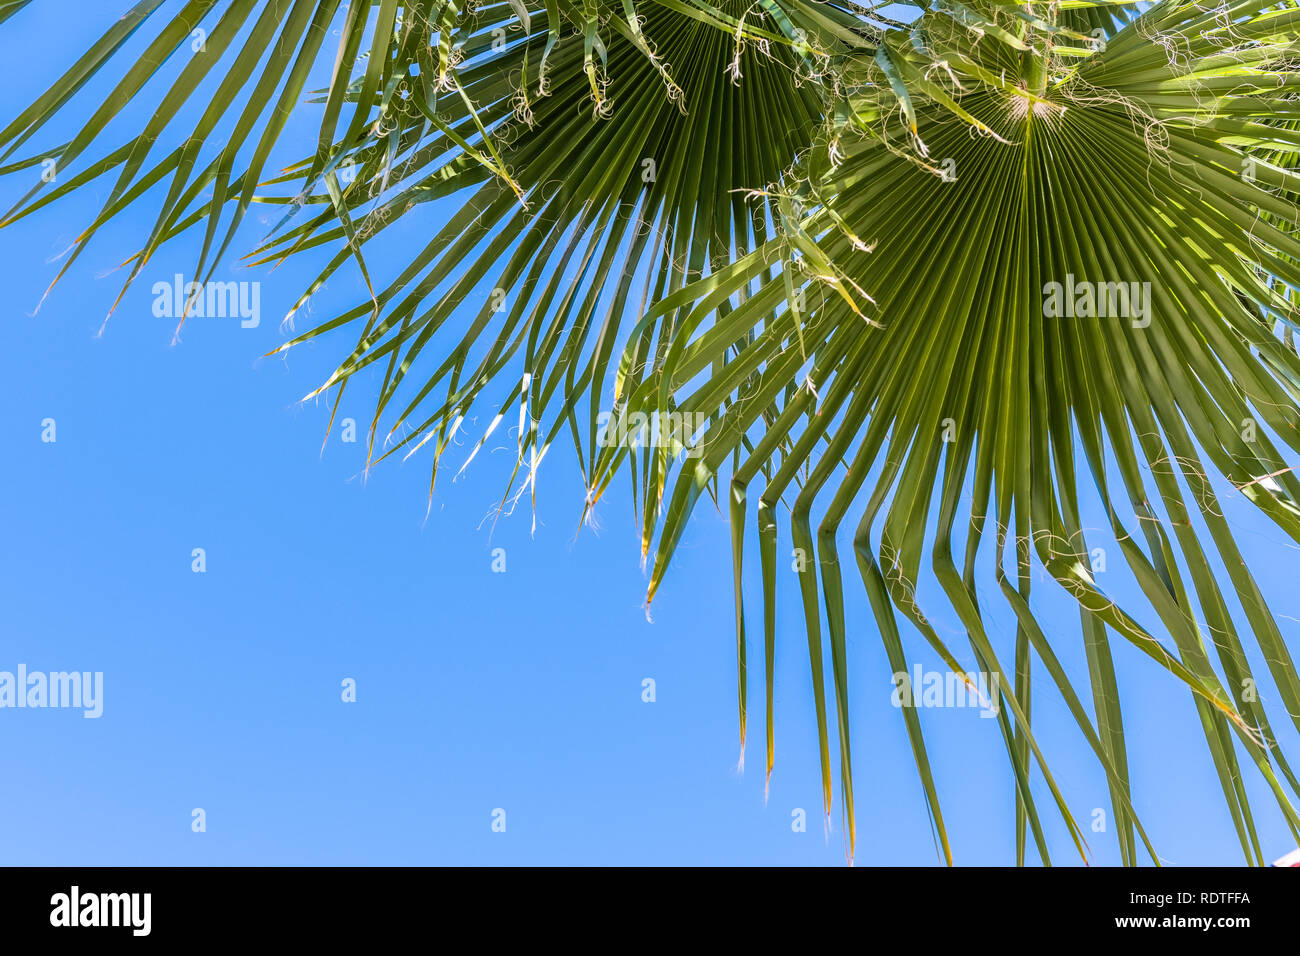 Ventilator Palmen (Washingtonia filifera) lässt auf einen blauen Himmel Hintergrund, Kalifornien Stockfoto